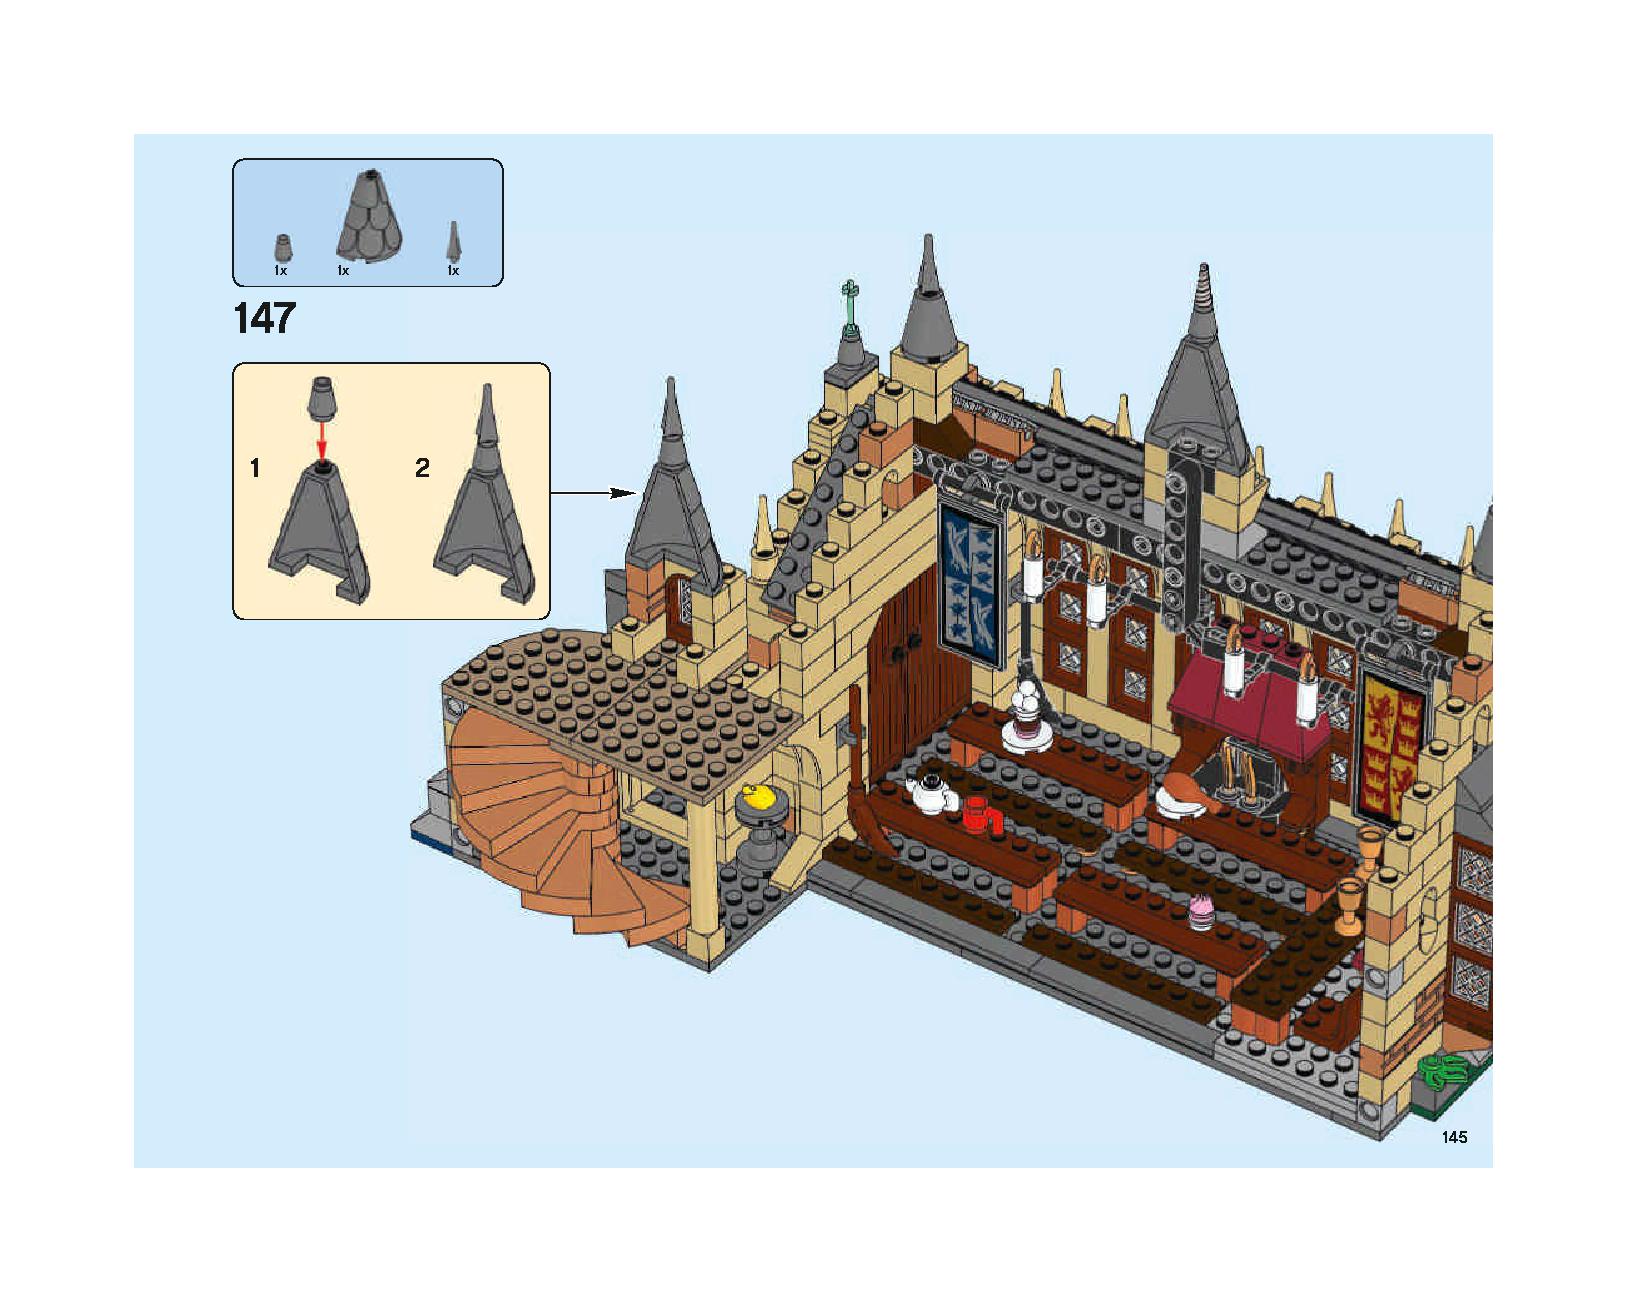 ホグワーツの大広間 75954 レゴの商品情報 レゴの説明書・組立方法 145 page